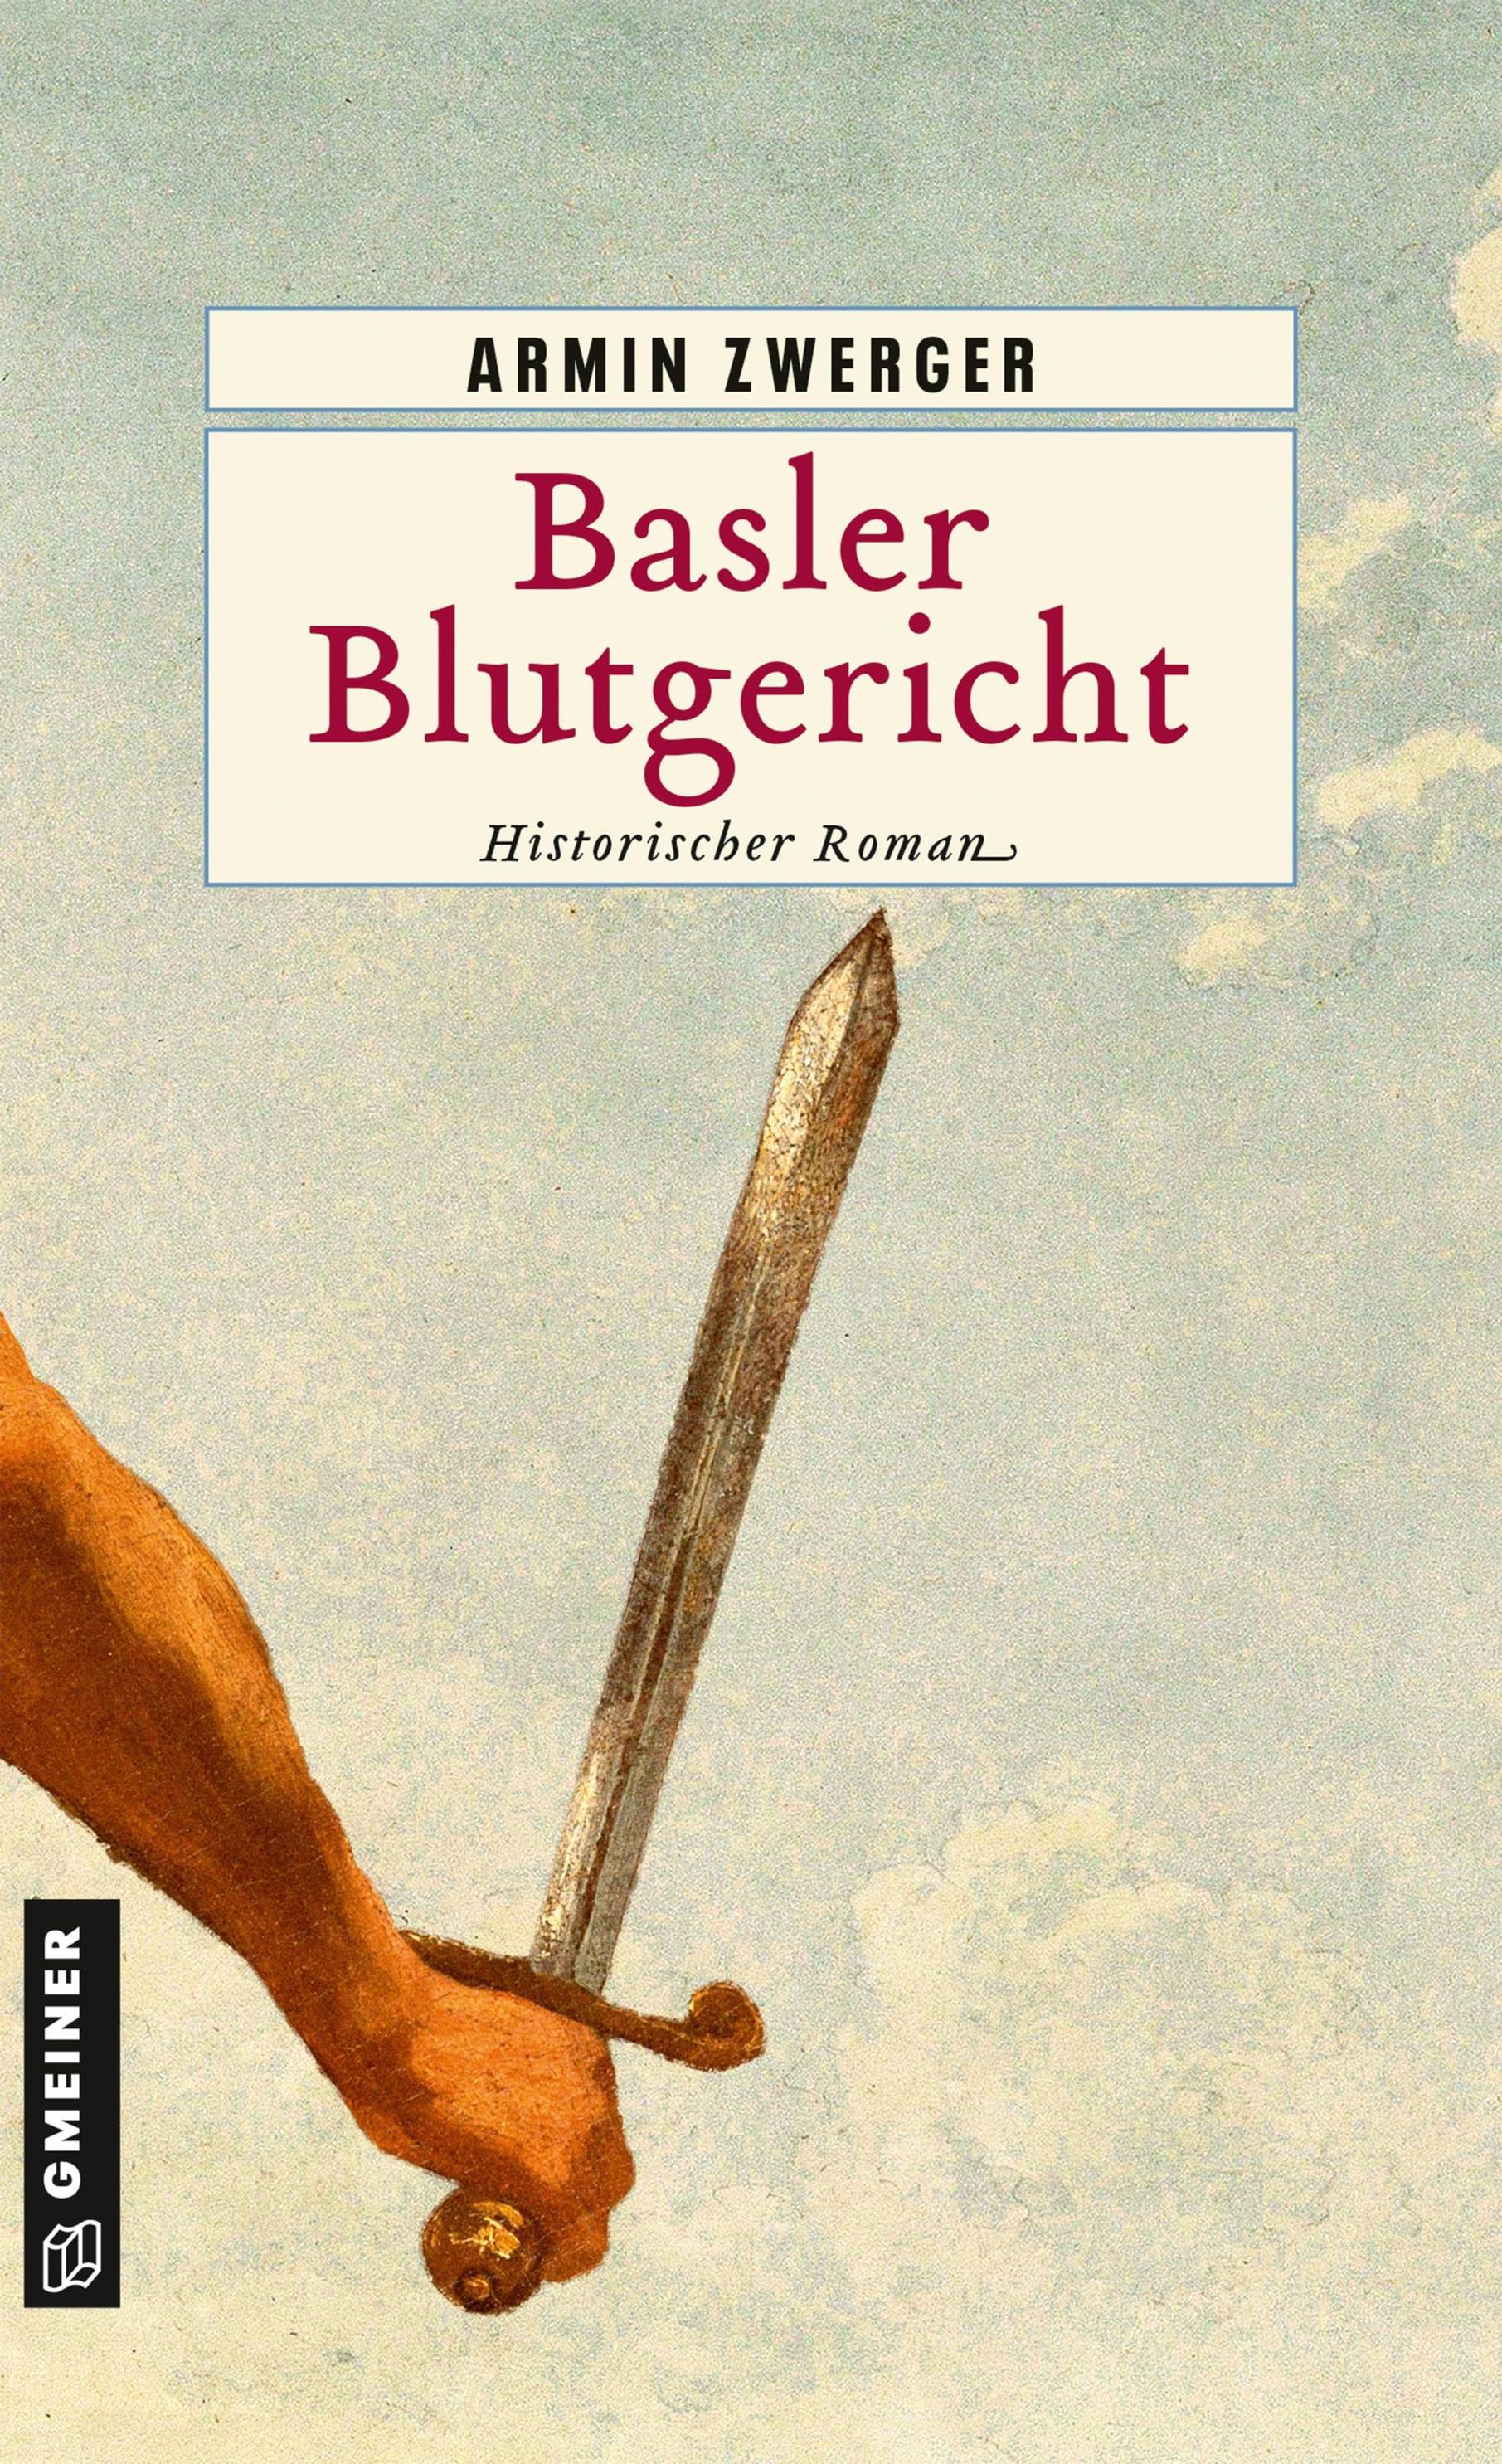 Basler Blutgericht Historische Romane im GMEINER-Verlag eBook v. Armin  Zwerger | Weltbild